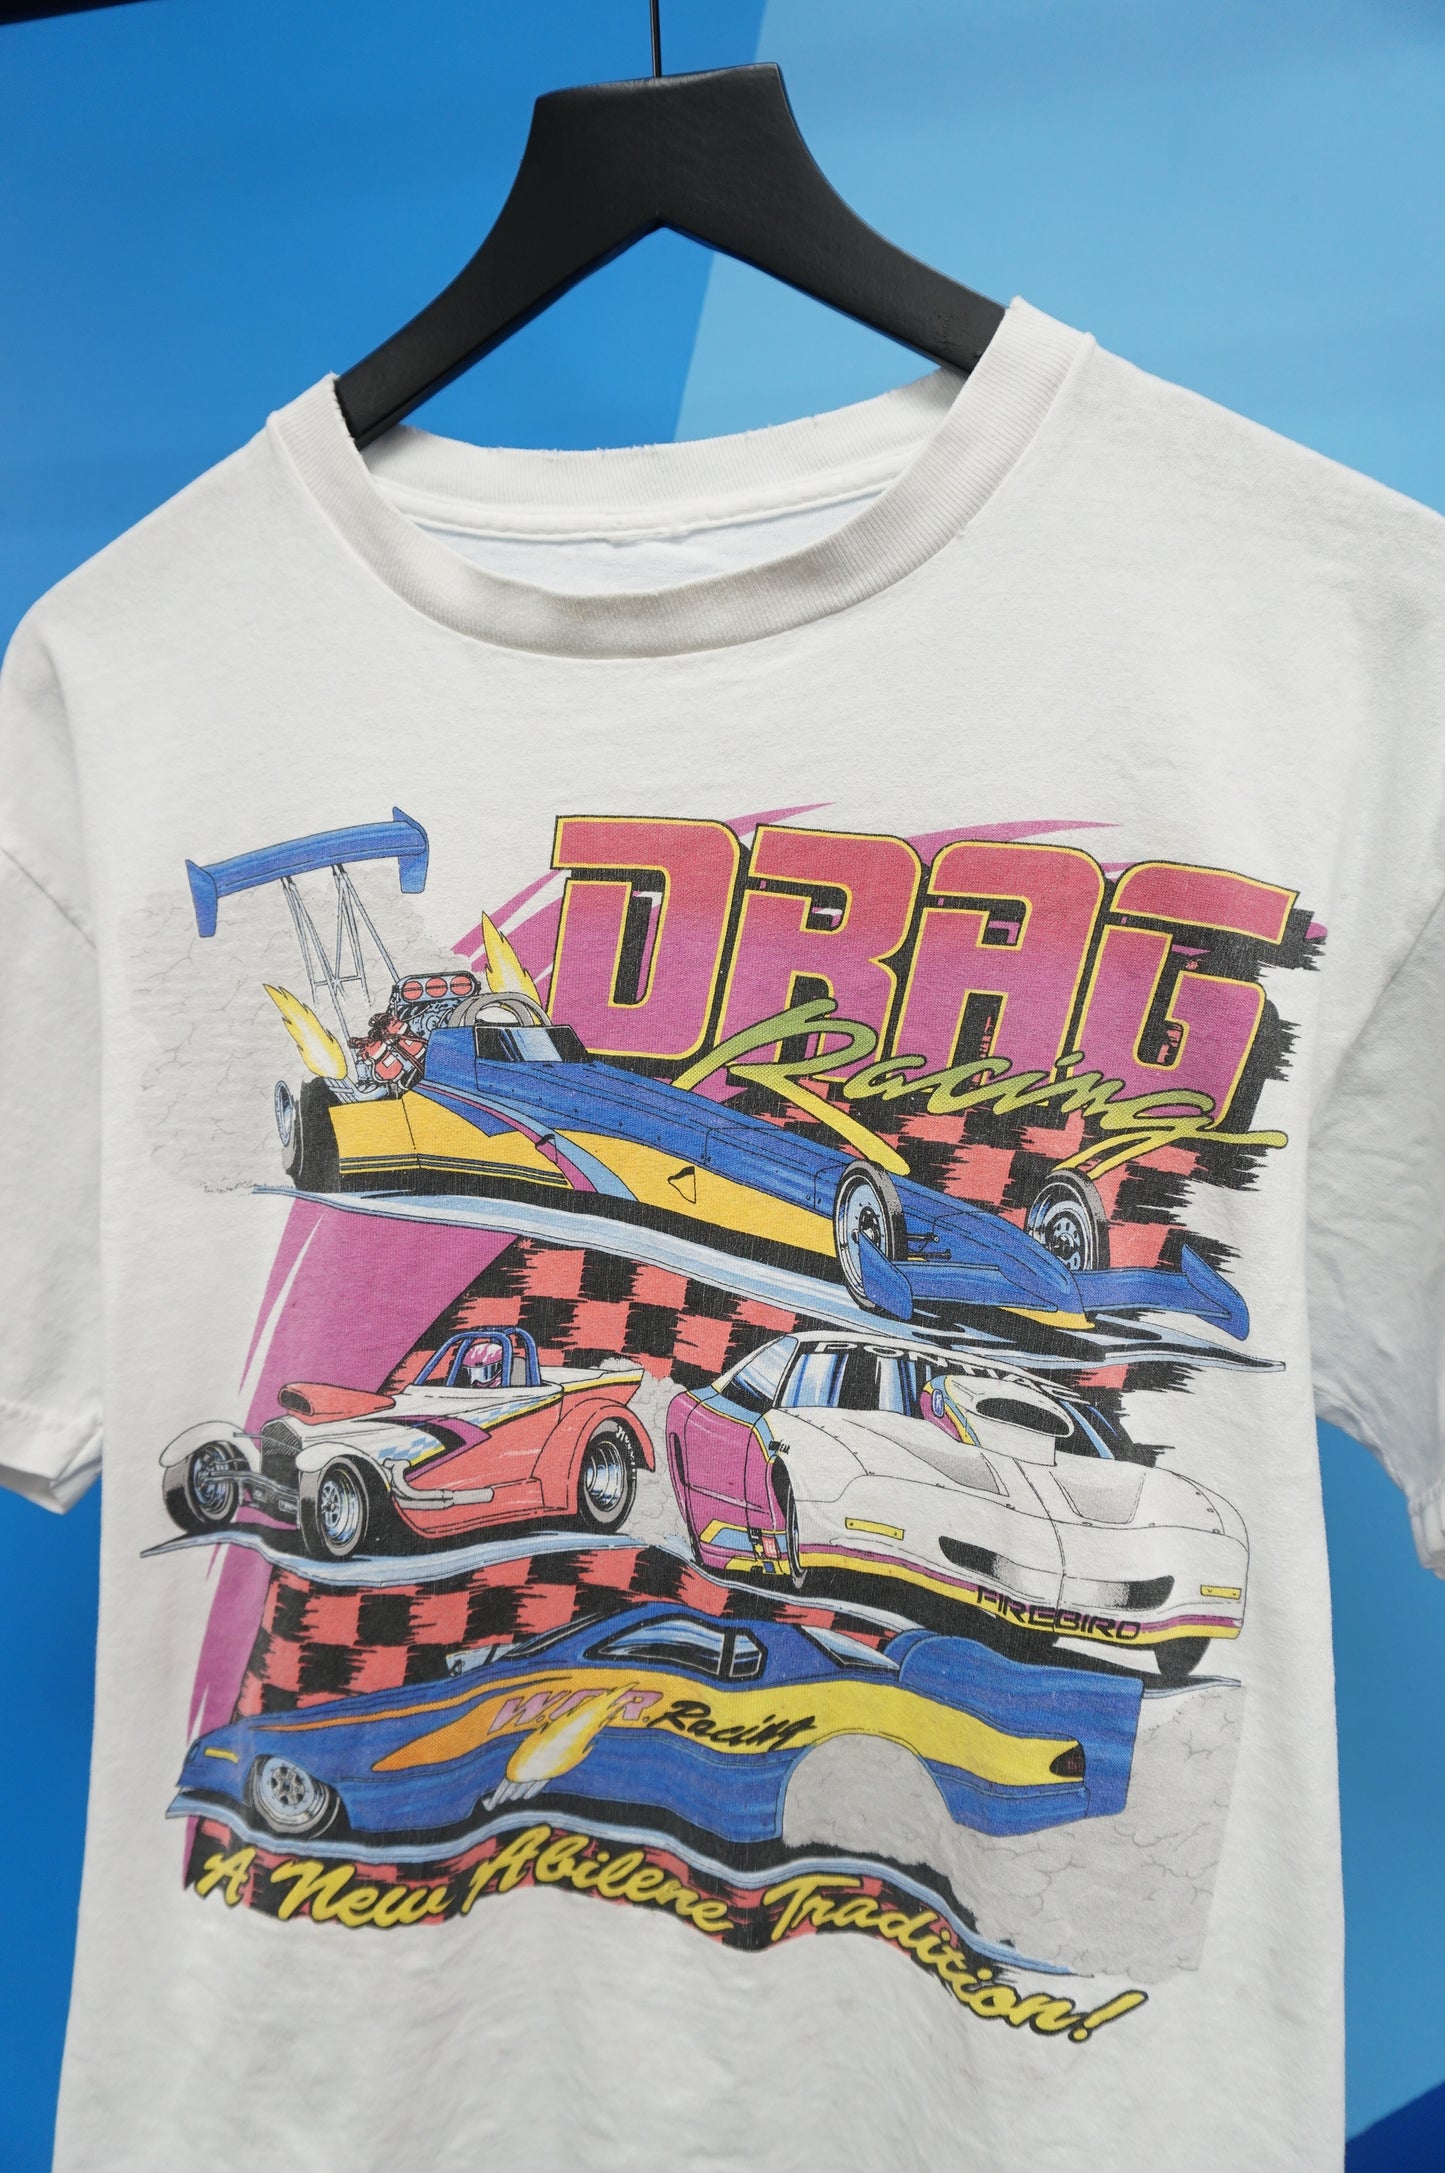 (M) Abilene Dragstrip Drag Racing T-Shirt